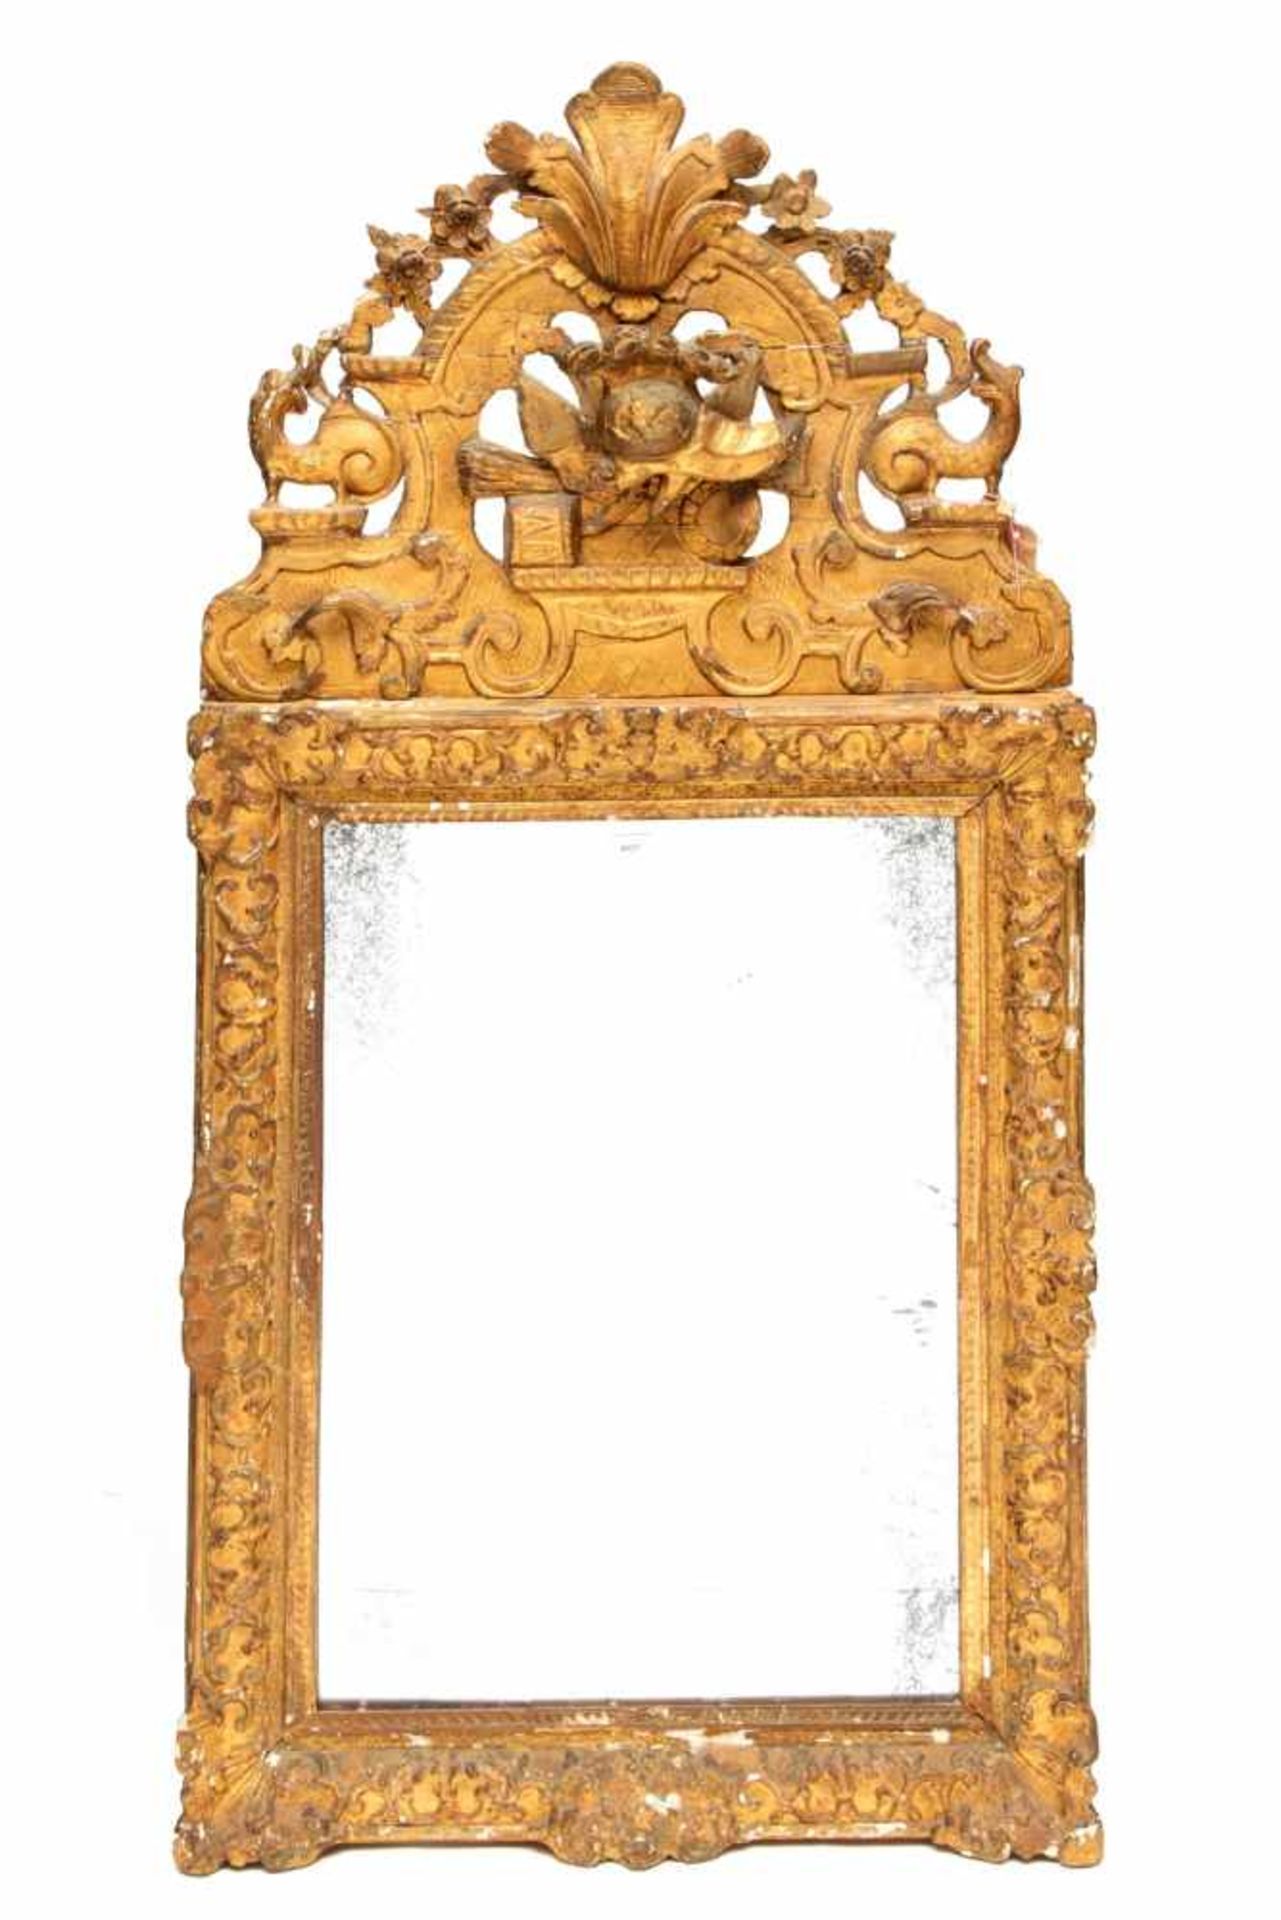 Rechthoekige spiegel in verguld gestoken houten lijst, 18e eeuw,met kapitale verguld gestoken